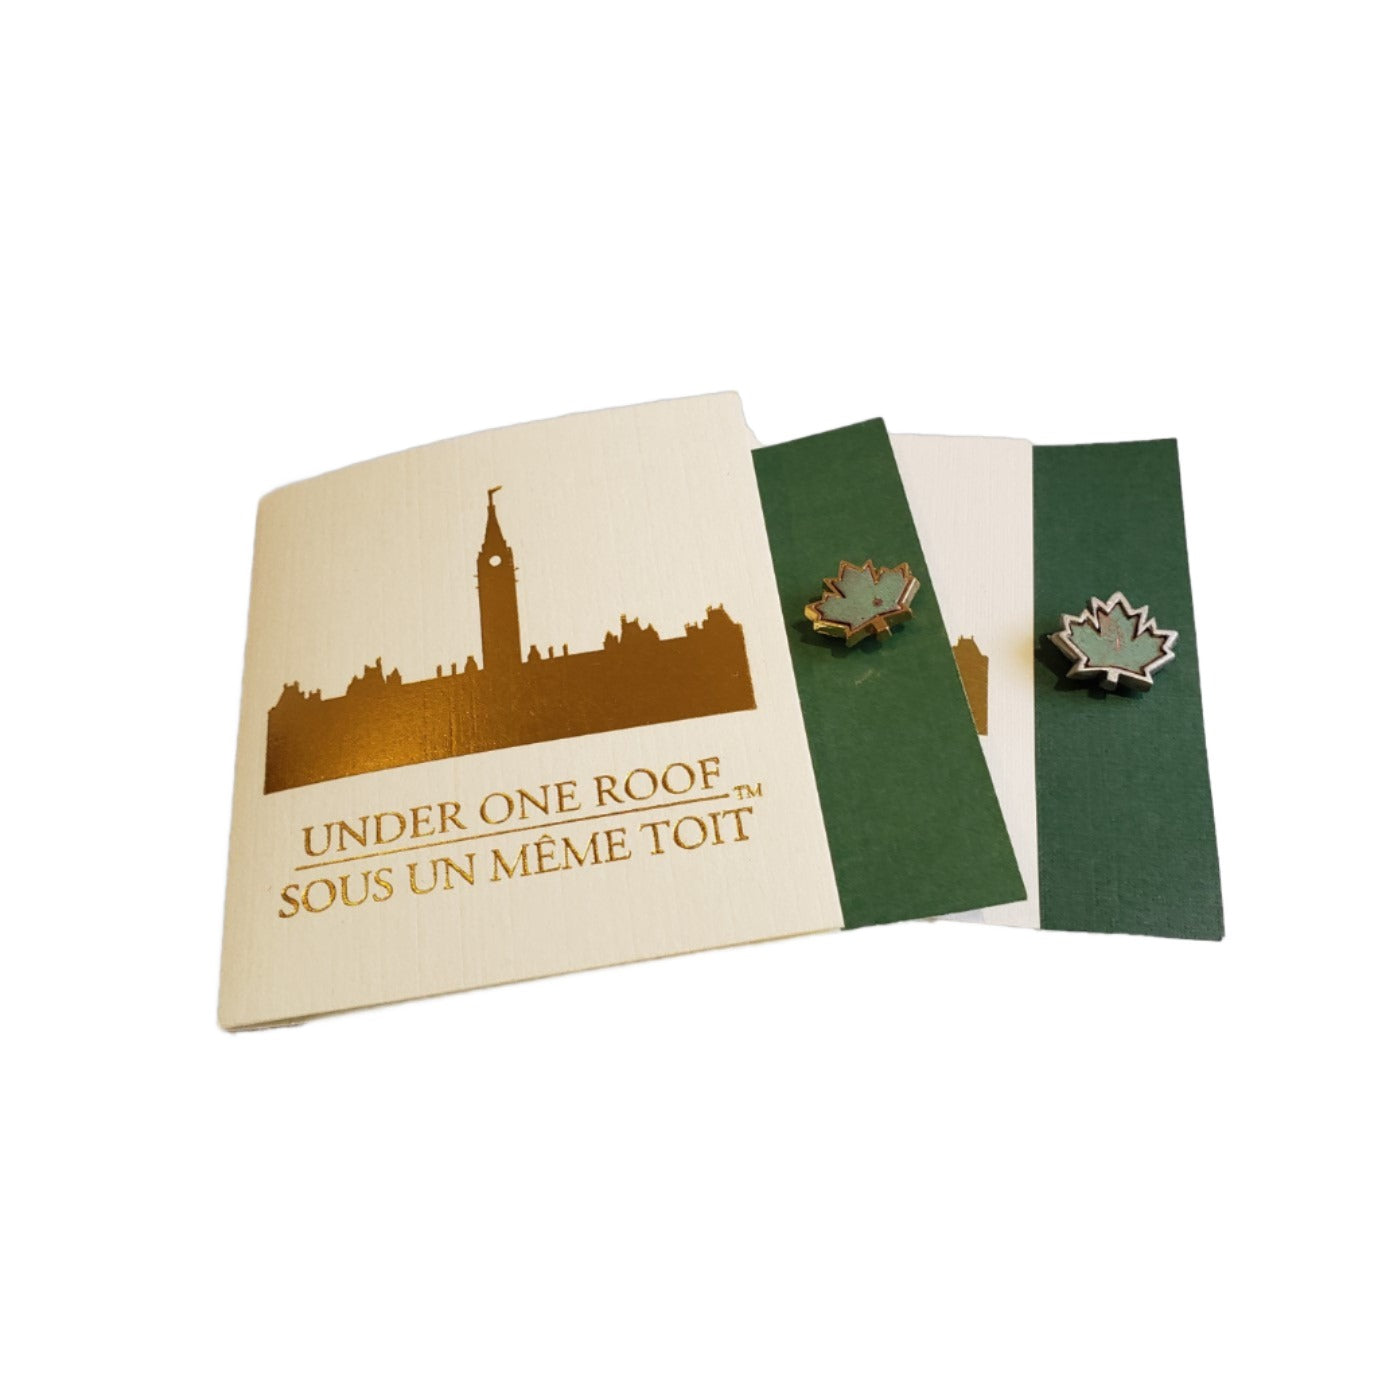 Copper pin (Small)  Épinglette en cuivre (Petite) – Parliamentary Boutique  / Boutique du Parlement